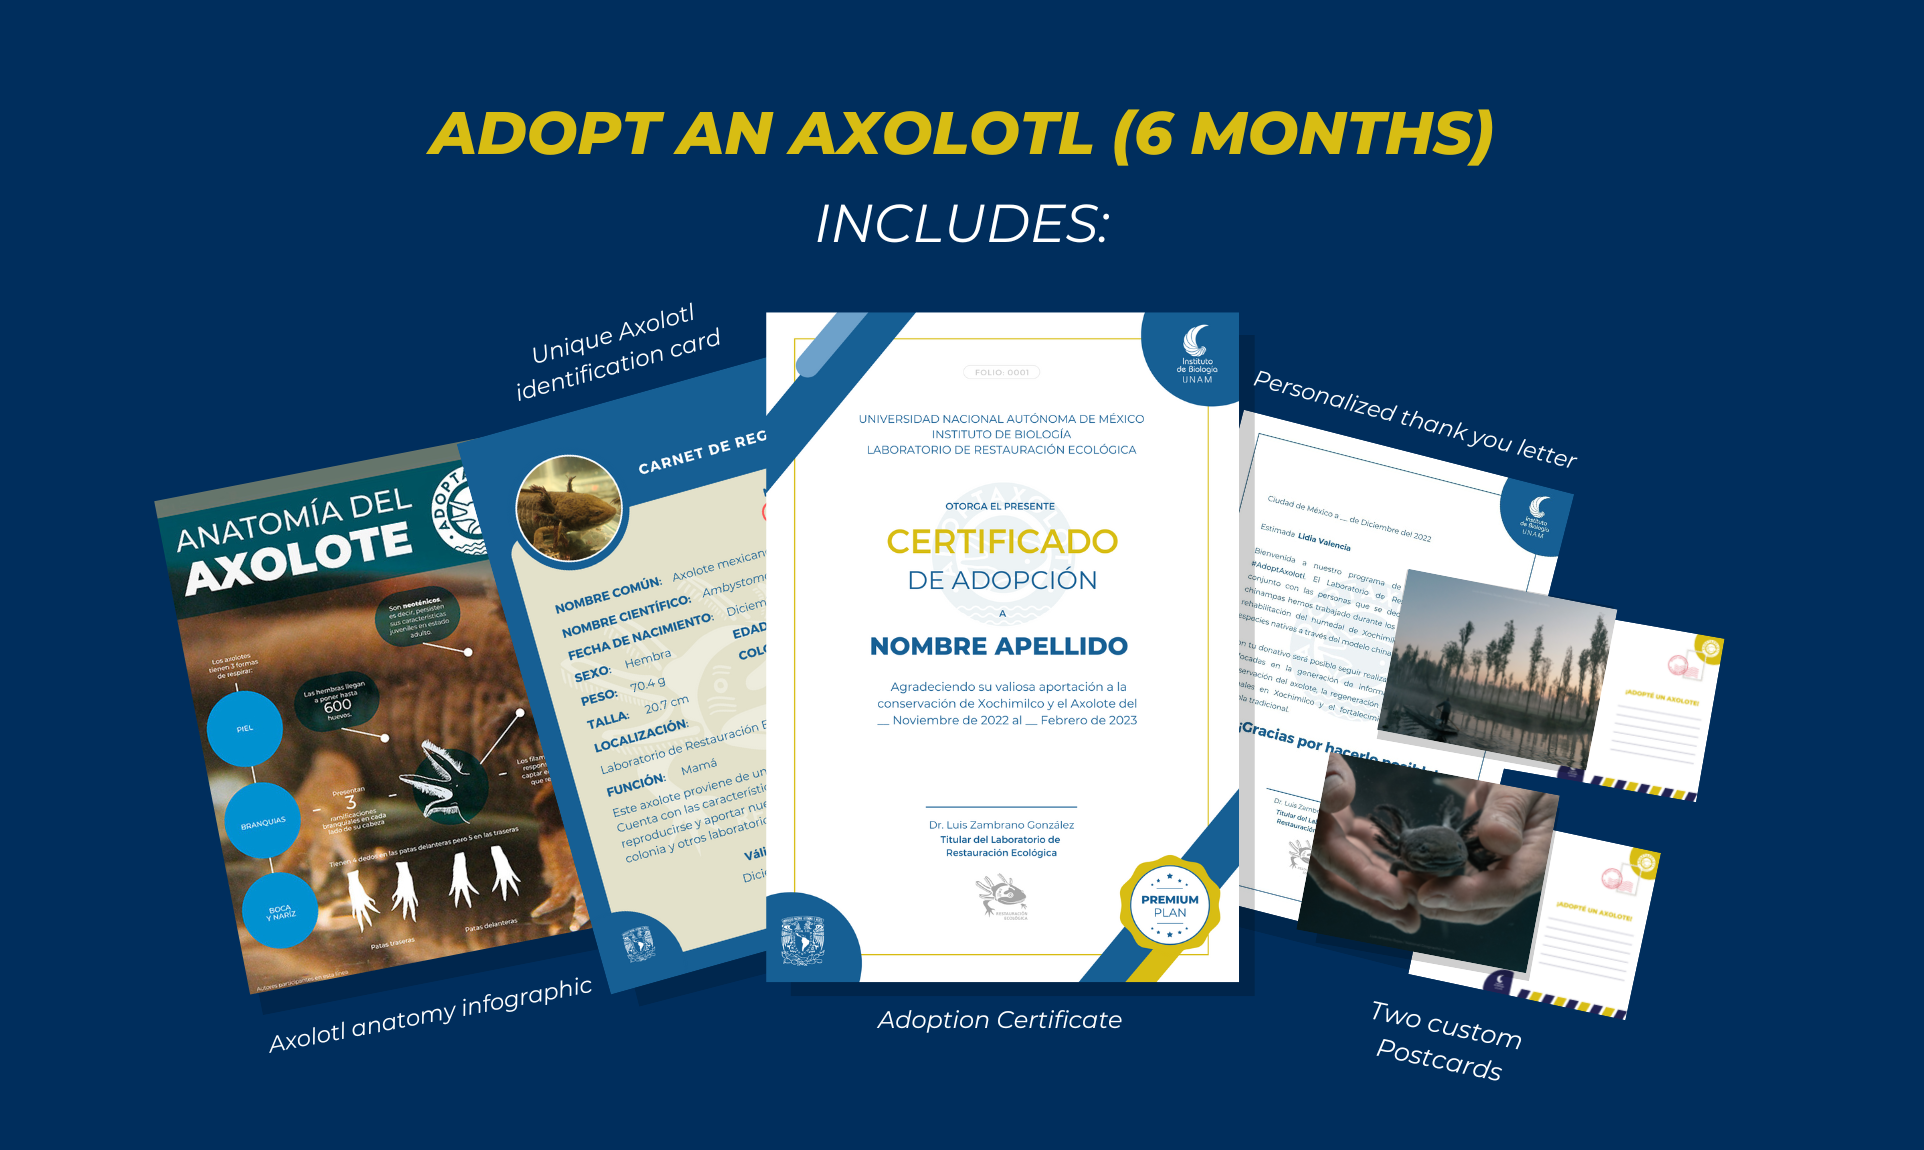 Adoptaxolotl - Axolotl adoption: 6 months